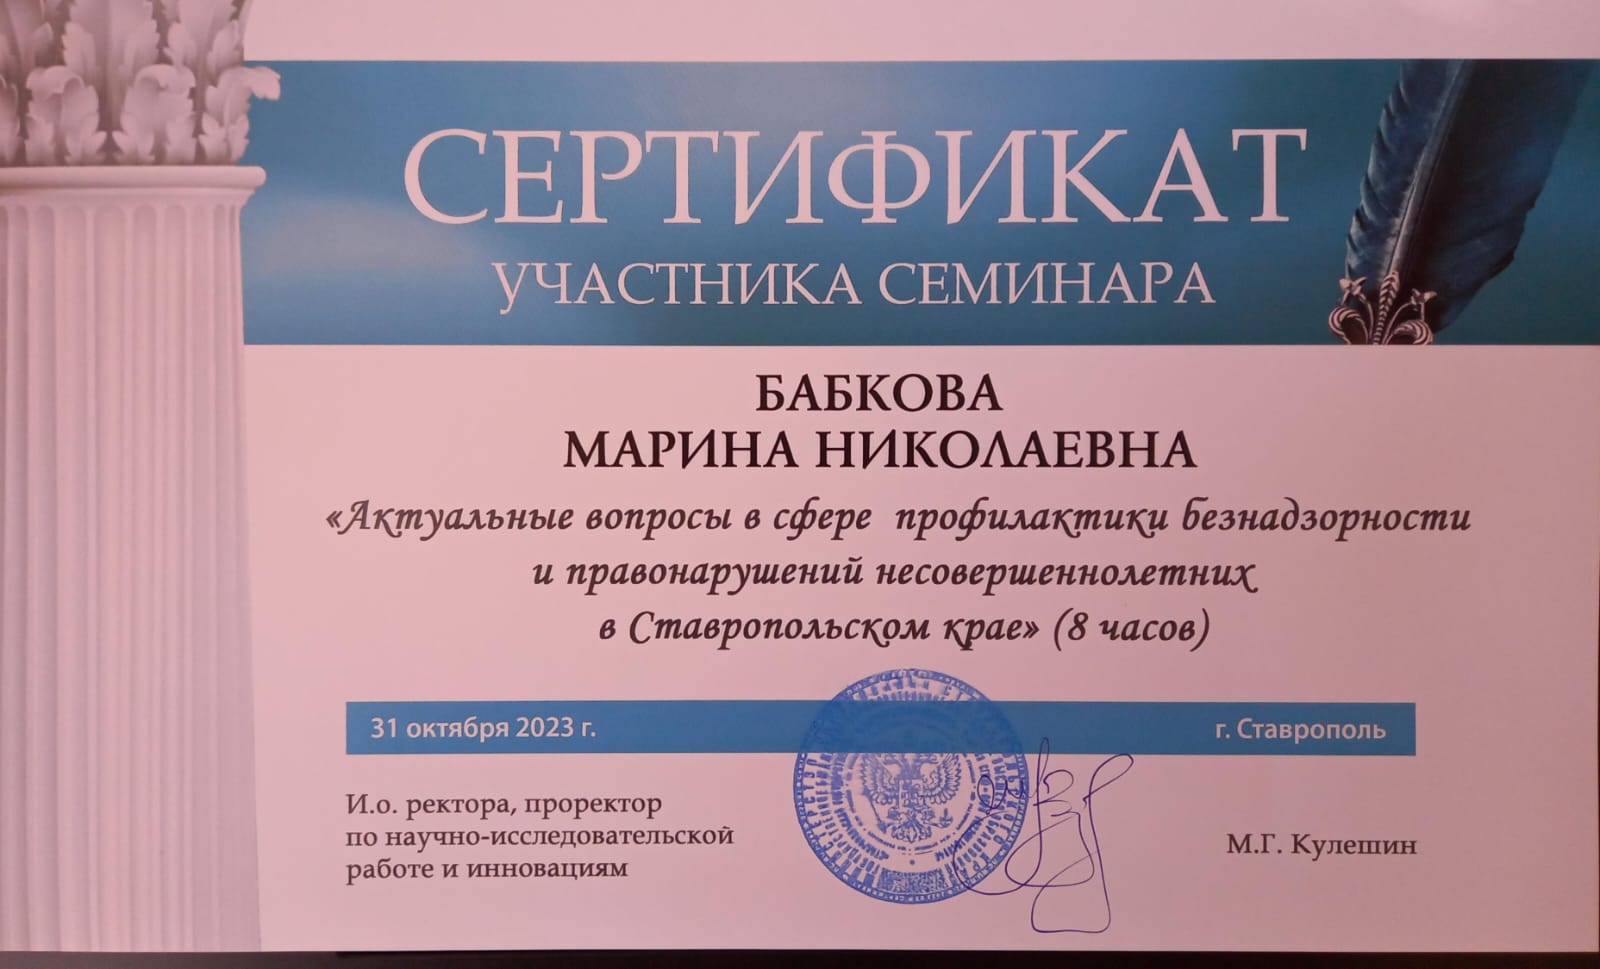 Актуальные вопросы в сфере профилактики безнадзорности и правонарушений несовершеннолетних в Ставропольском крае.